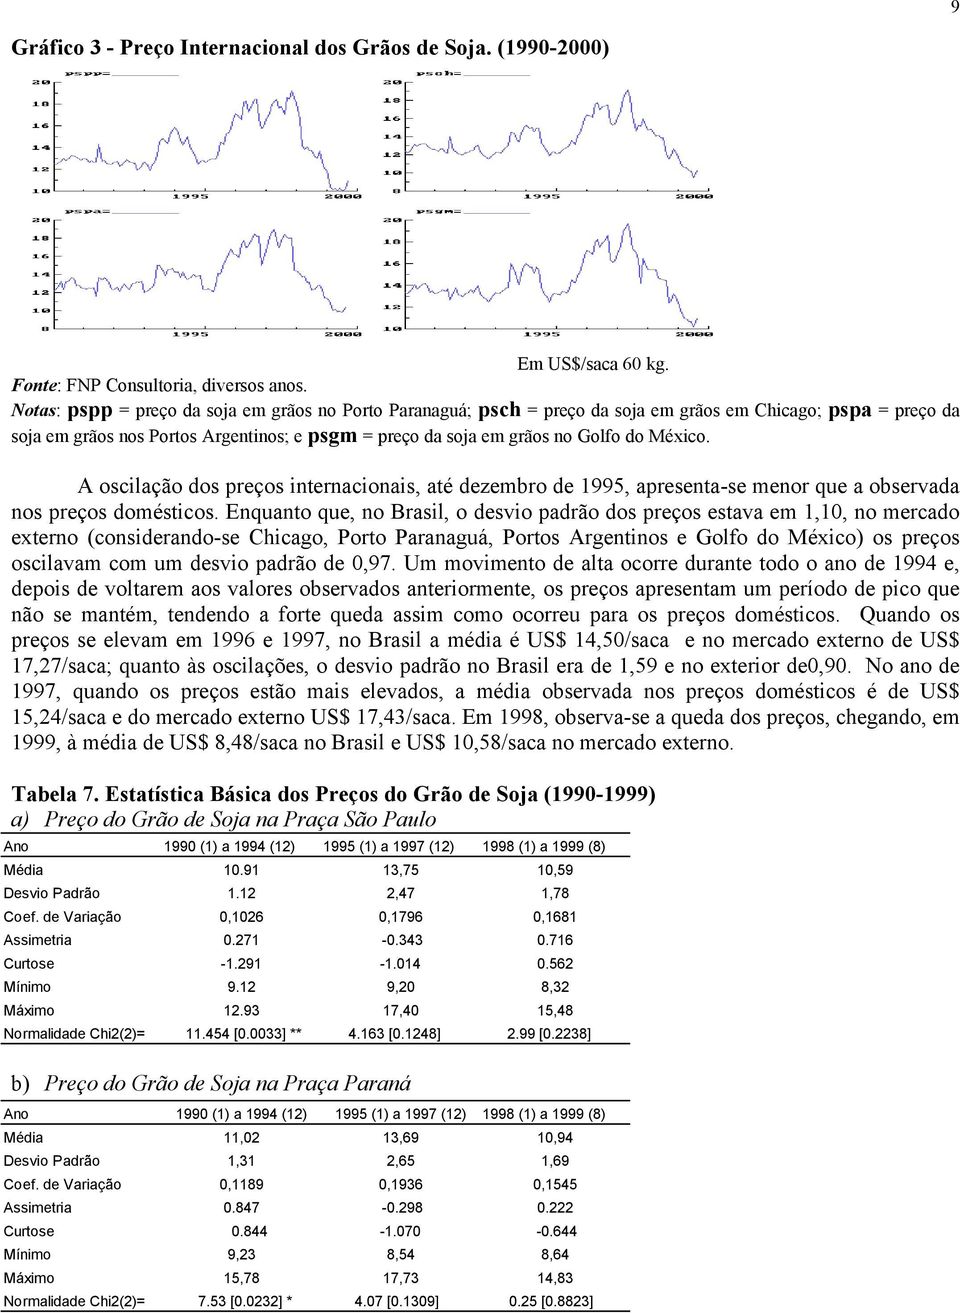 A oscilação dos preços inernacionais, aé dezembro de 1995, apresena-se menor que a observada nos preços domésicos.